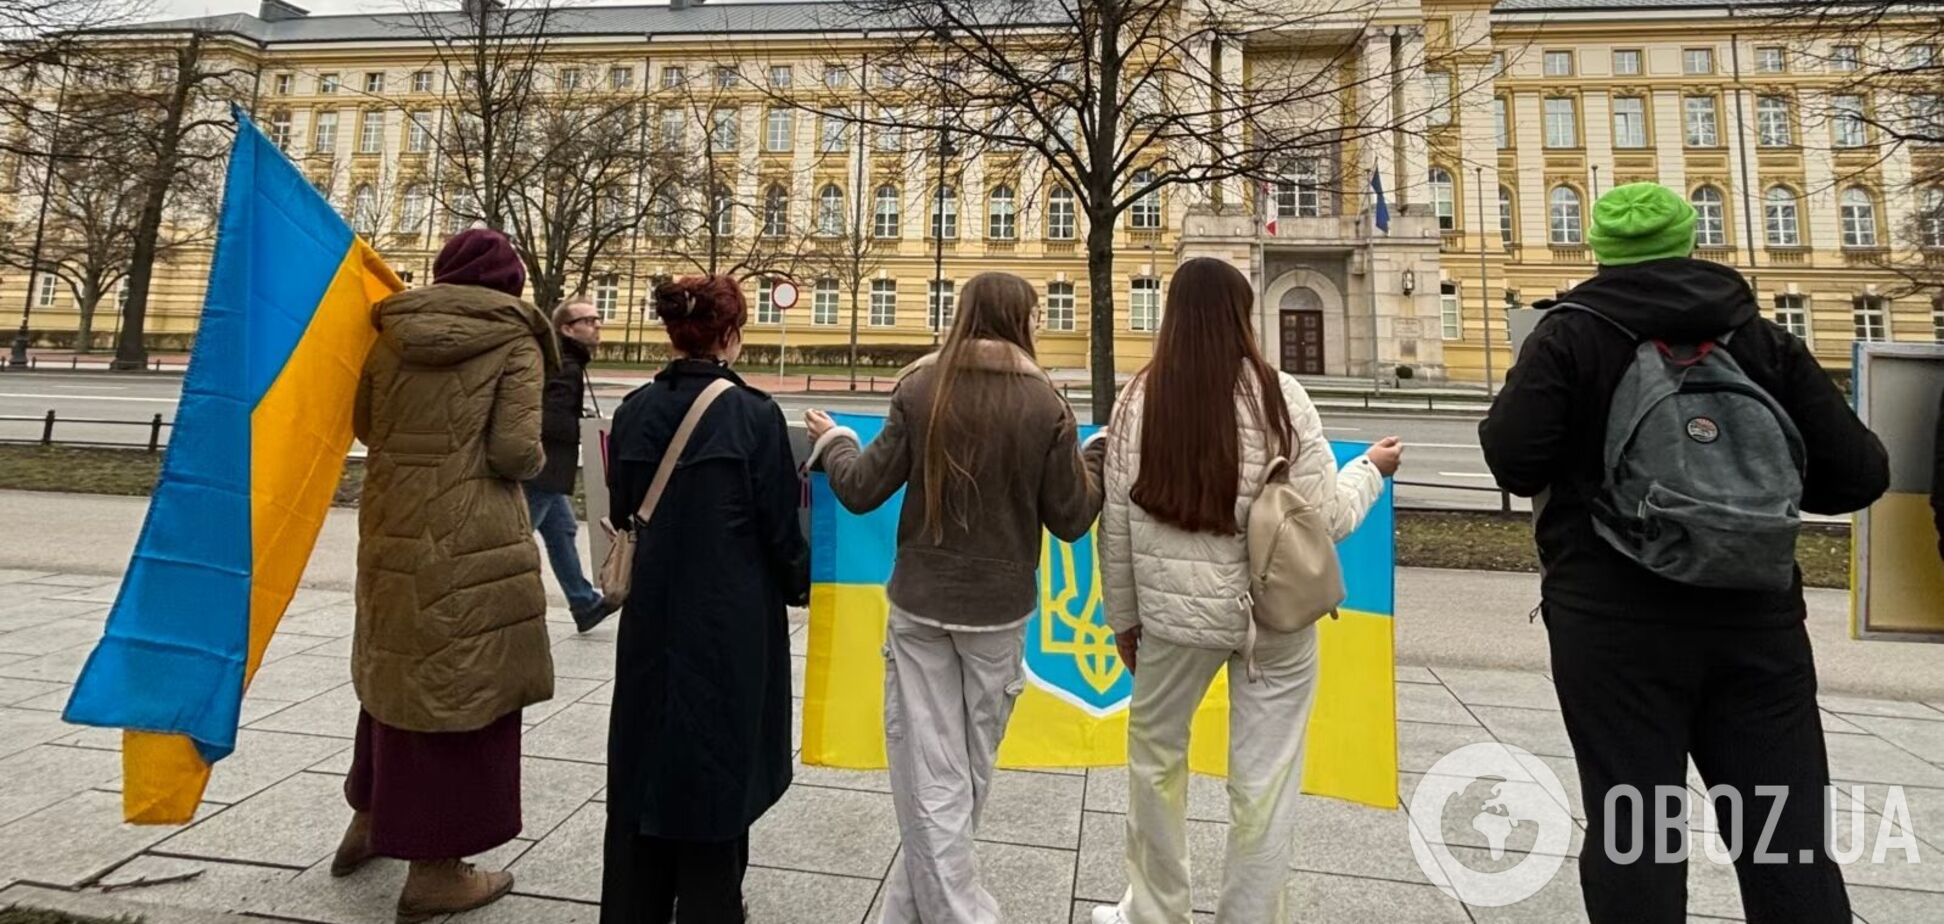 'Граница – линия жизни': в Варшаве протестовали против блокады границы с Украиной. Фото